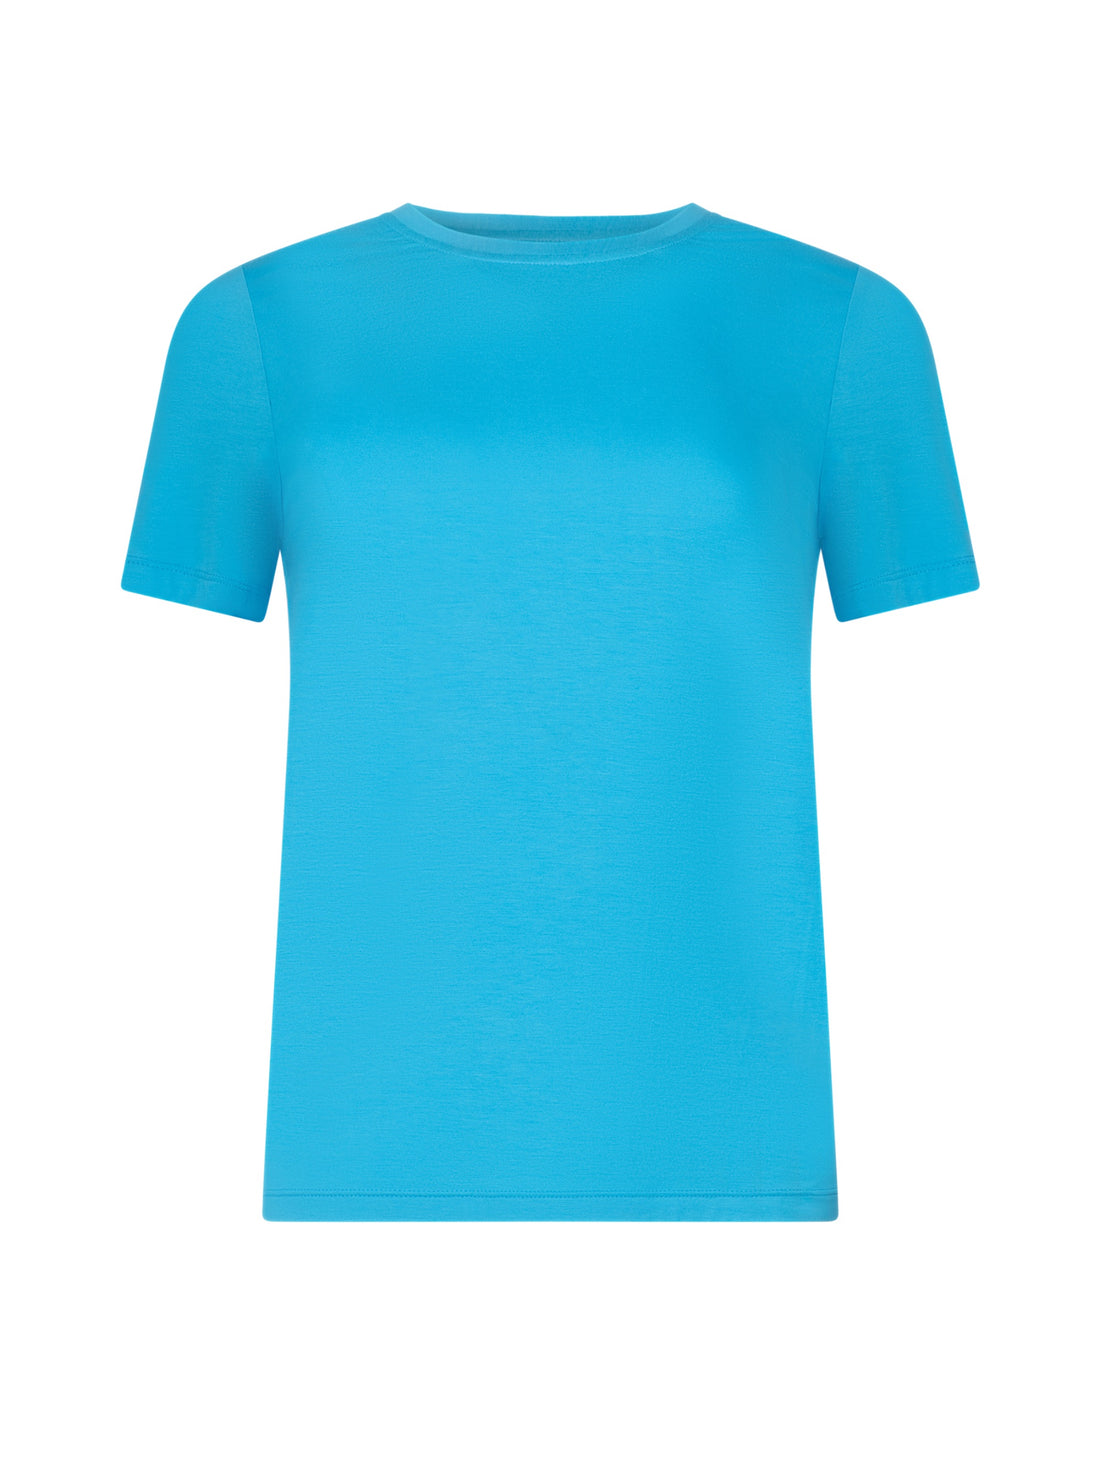 Klassisches T-Shirt mit Rundhalsausschnitt aus hochwertigem, atmungsaktiven Premium Jersey